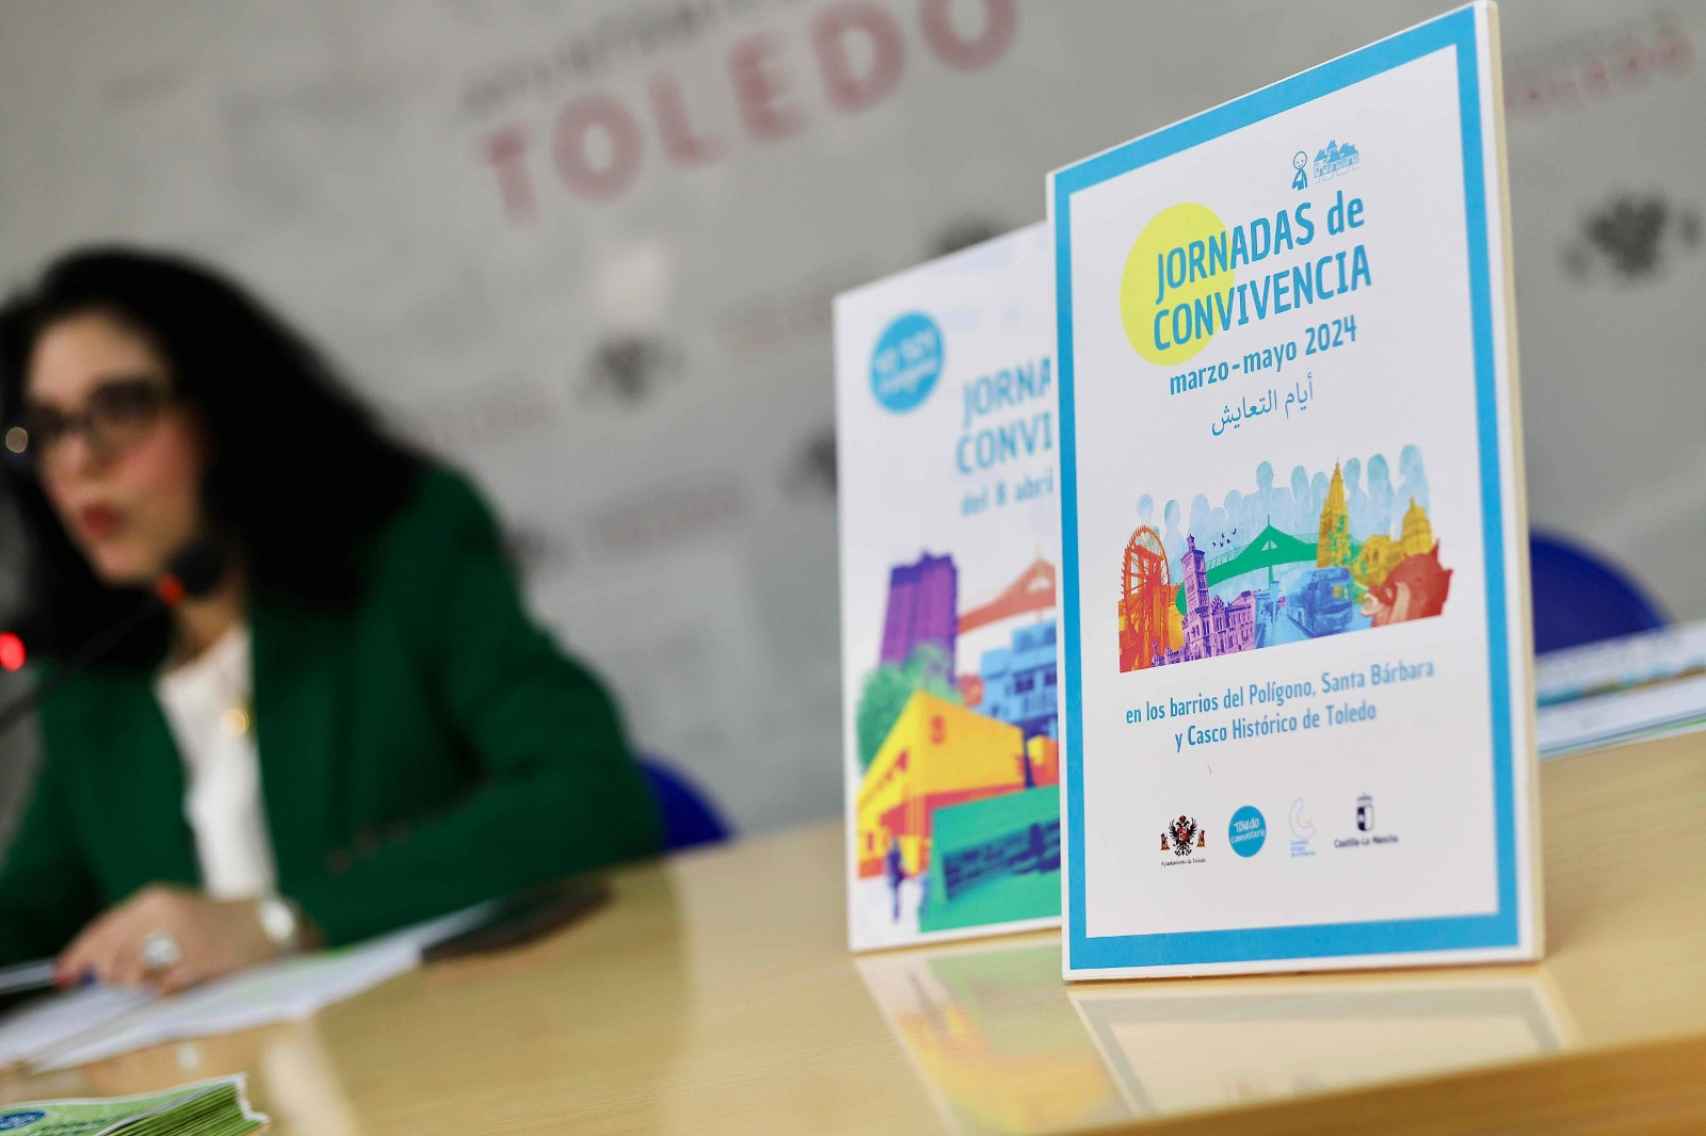 Presentación de las I Jornadas de Convivencia en Toledo.